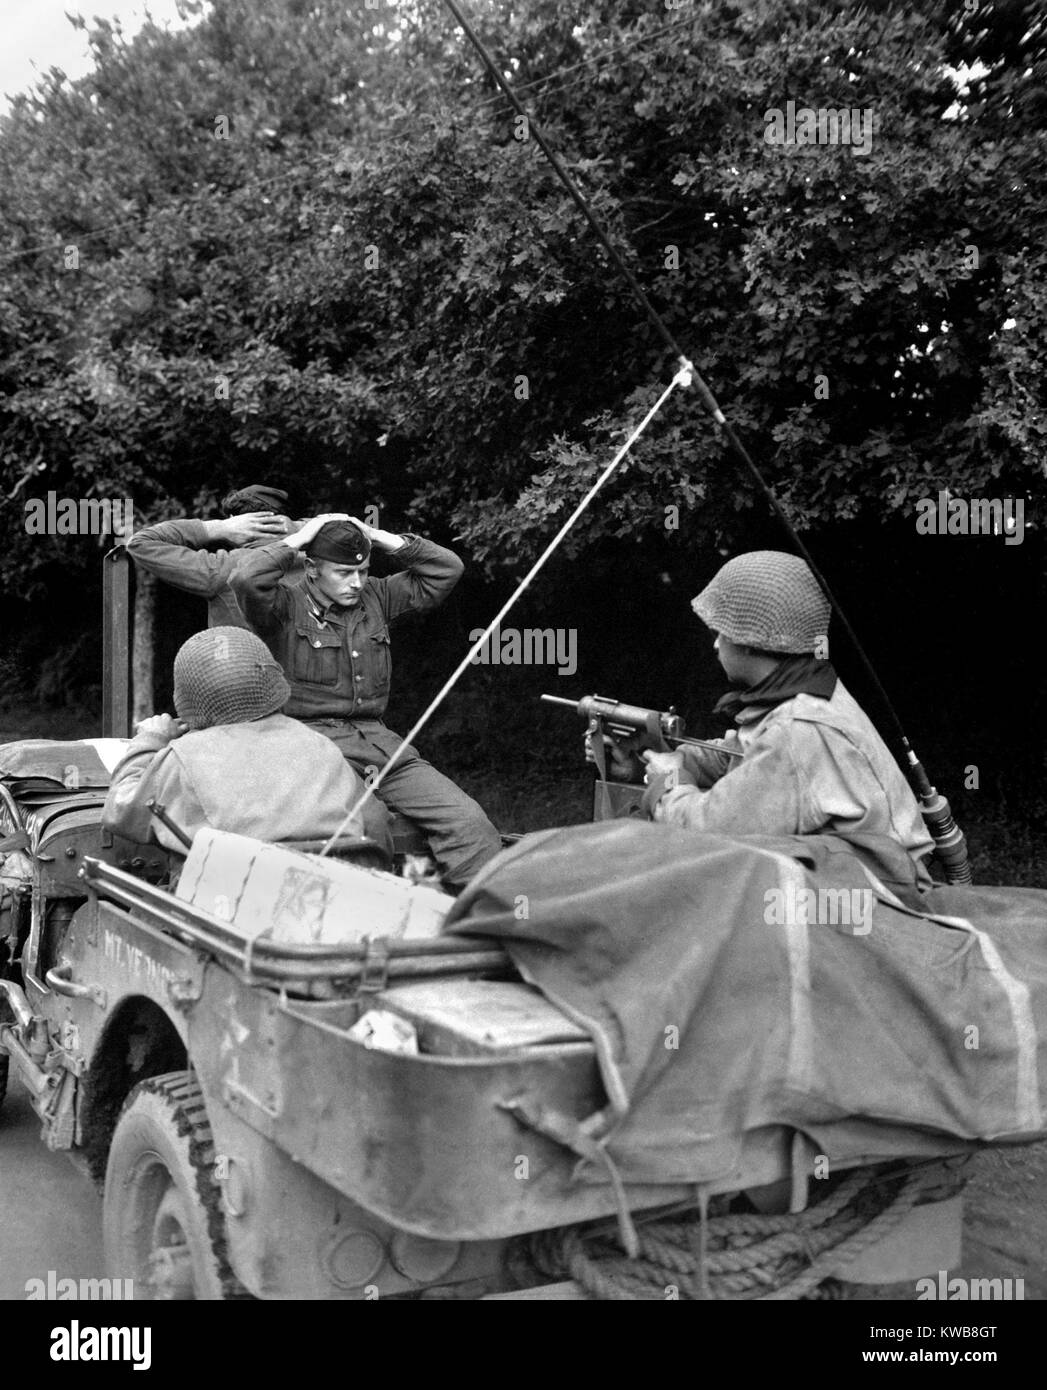 Deux prisonniers allemands gardés par l'infanterie française libre de la 6e Armored Div. Plouay, Bretagne, France. Le 28 août 1944. La Seconde Guerre mondiale 2. (BSLOC 2014 8 92) Banque D'Images